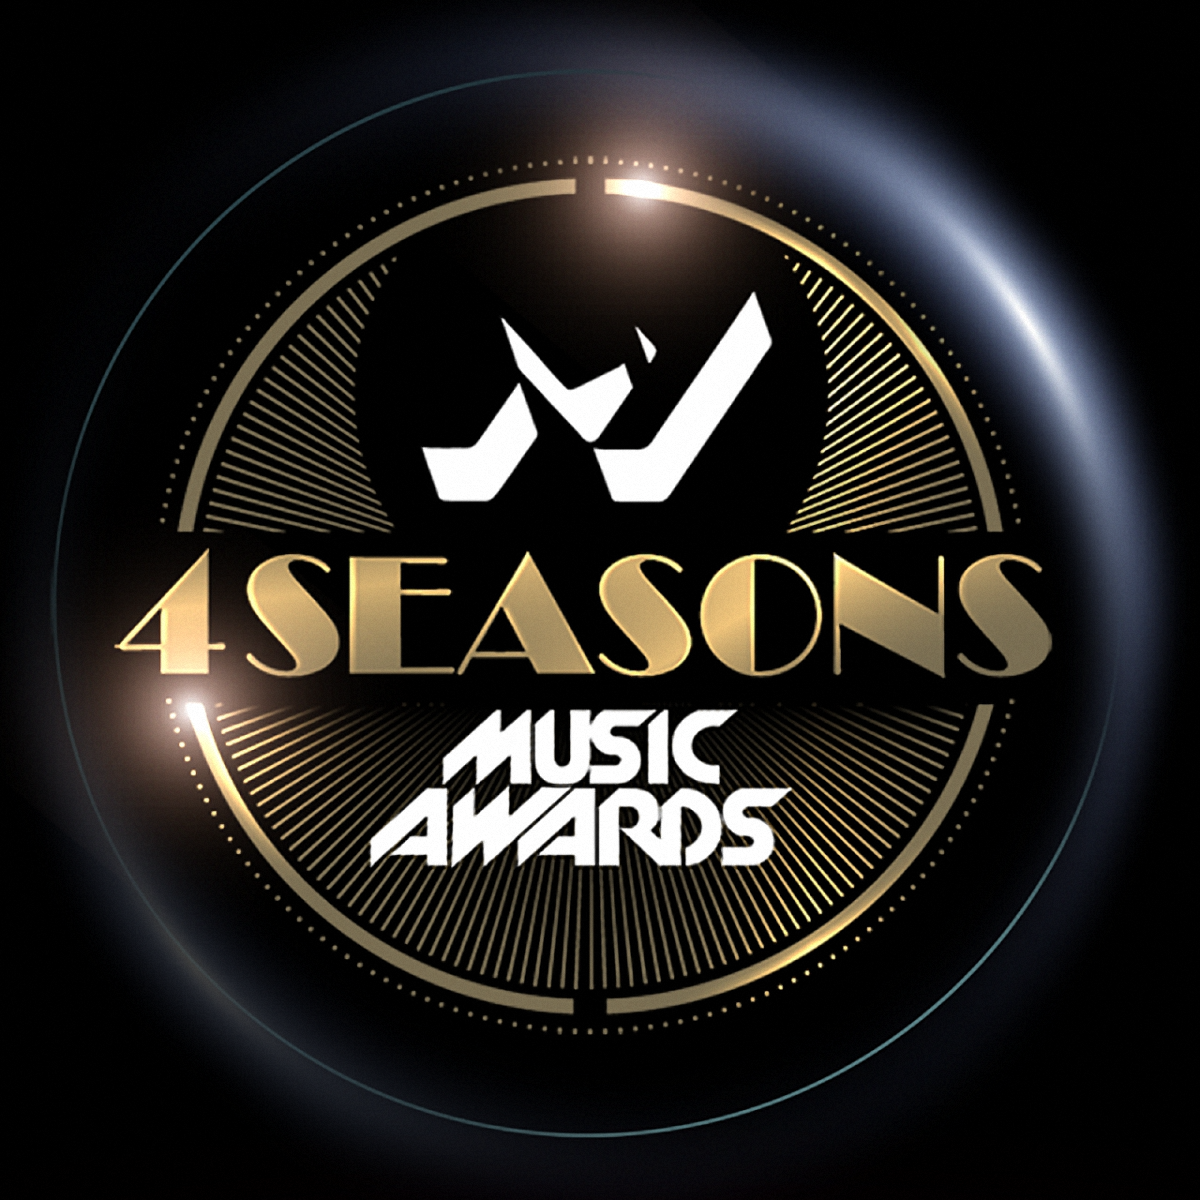 M1 Music Awards 2018: Онлайн-трансляция церемонии награждения M1 Music Awards от 1.12.2018 - фото 1